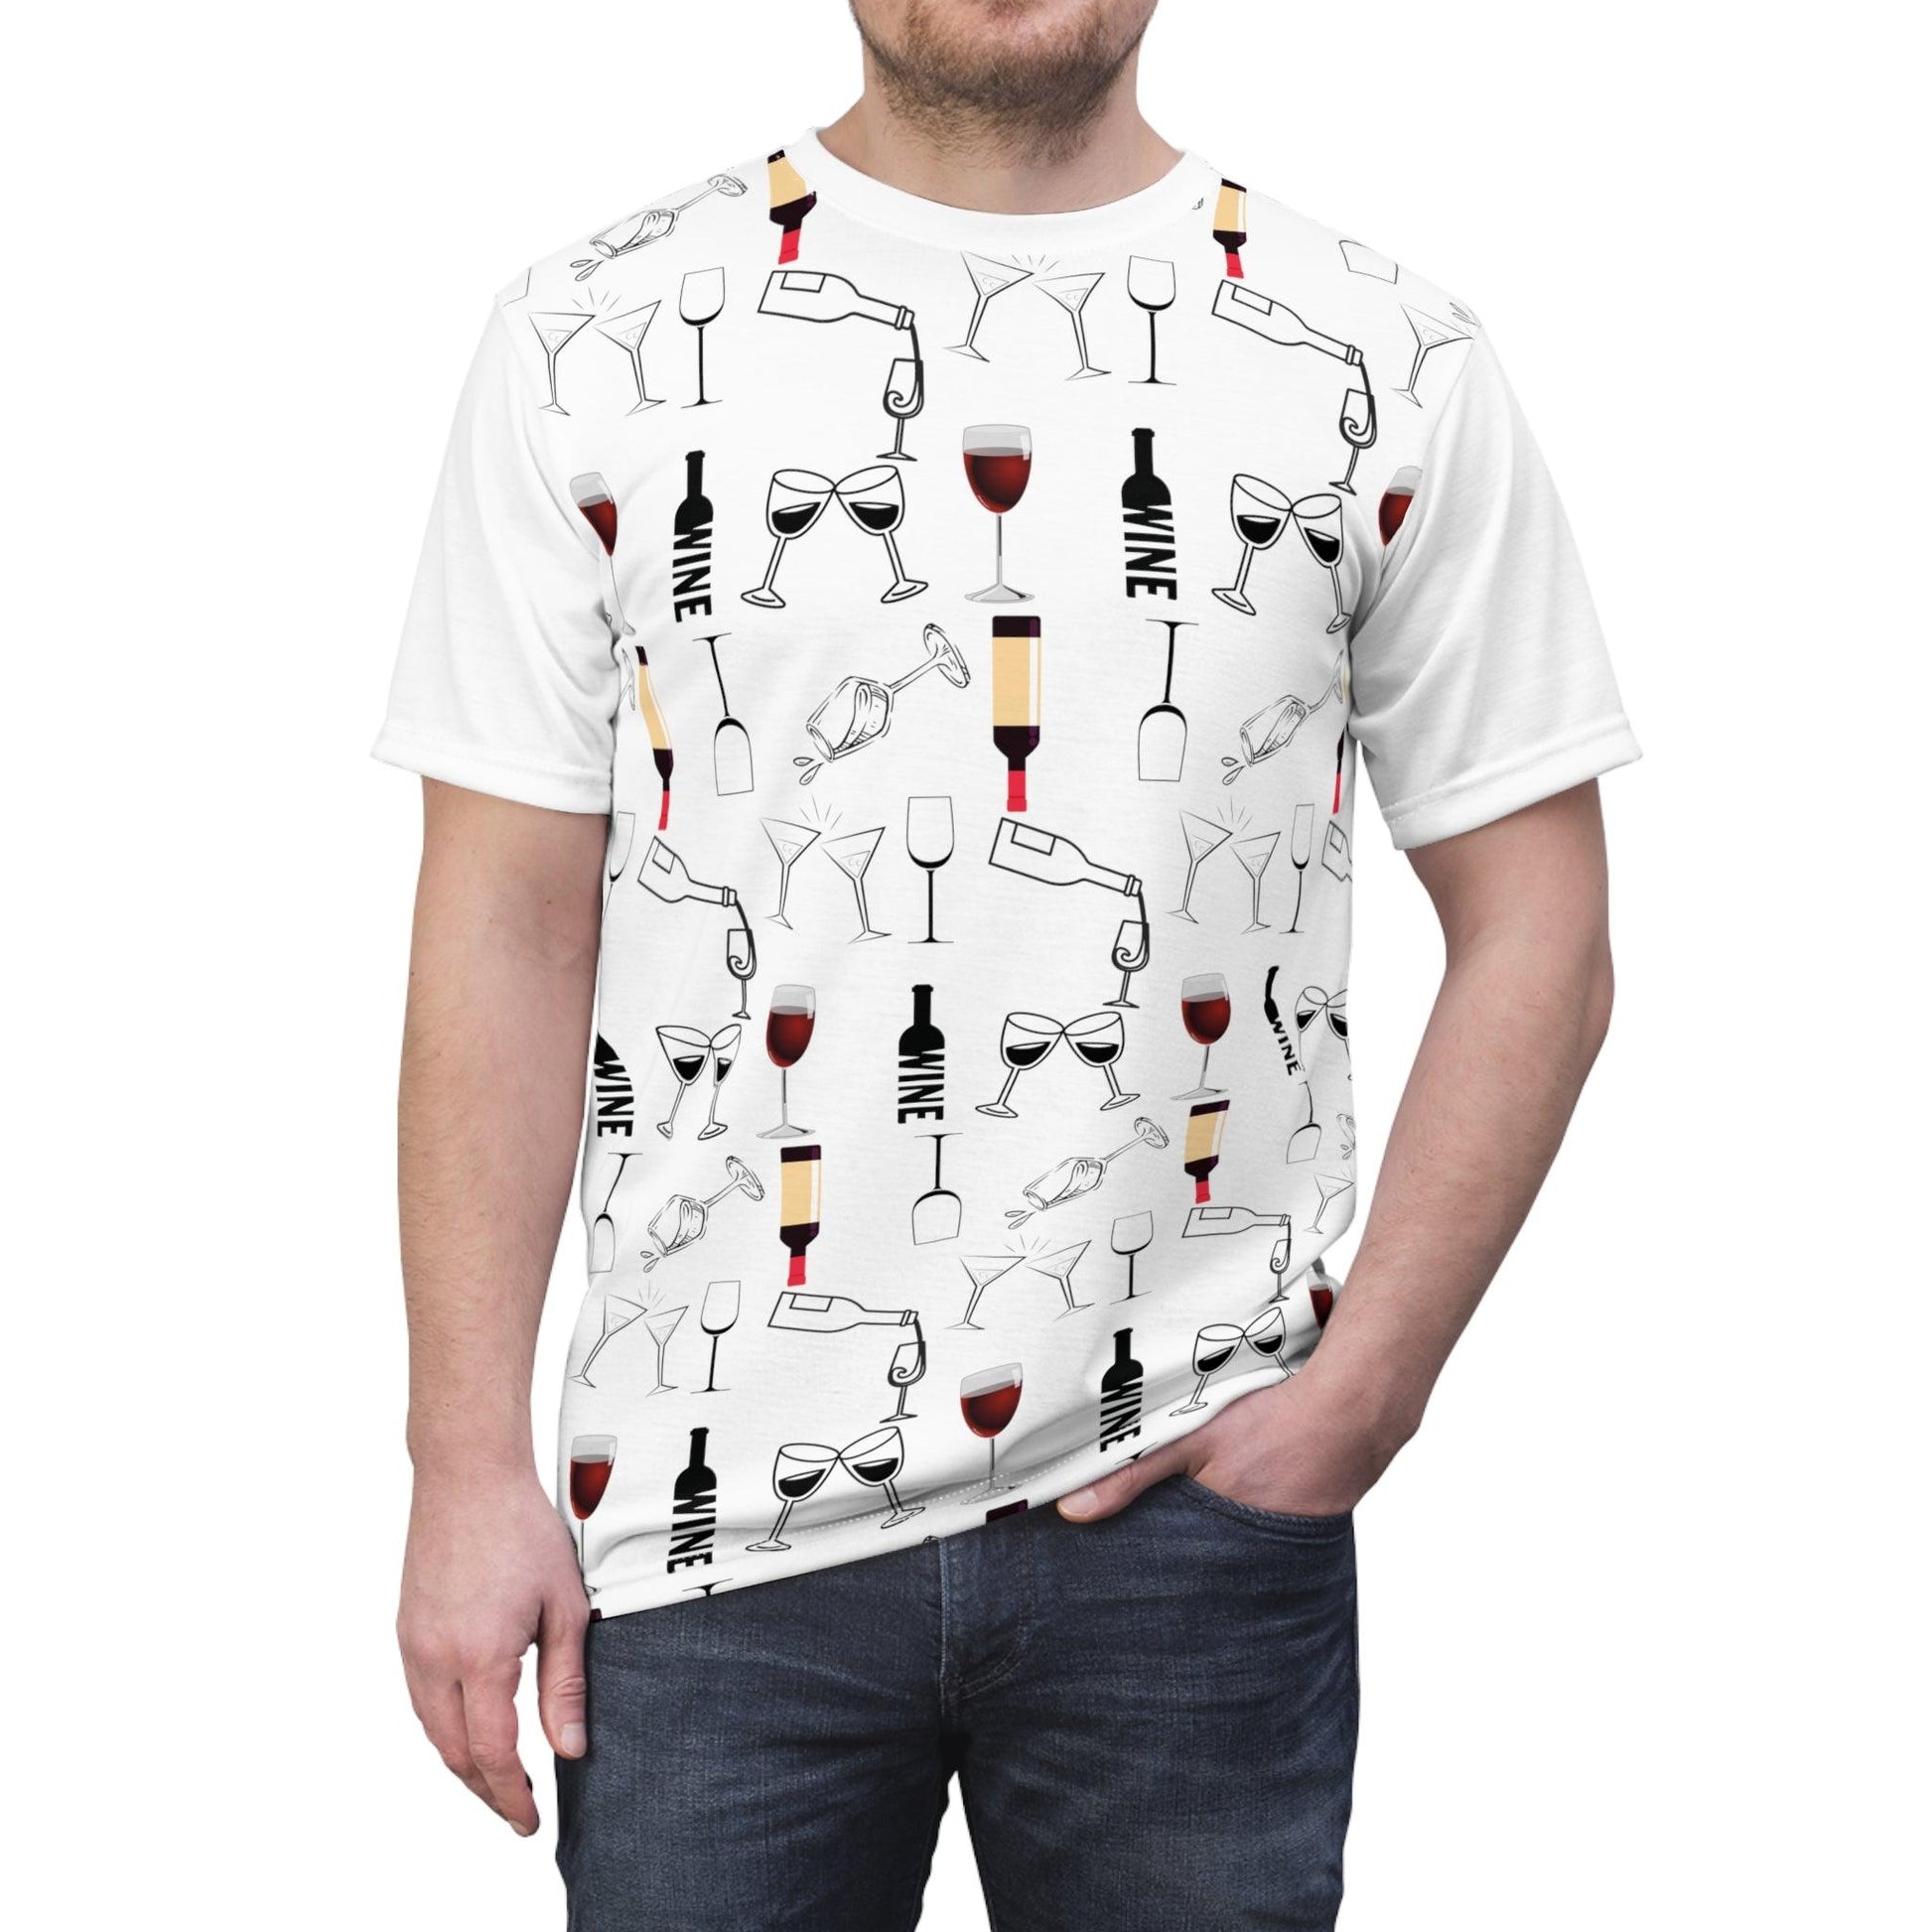 Wine shirt, wine shirt for women, wine shirt Men, wine shirts for men, Wine shirts funny - Giftsmojo